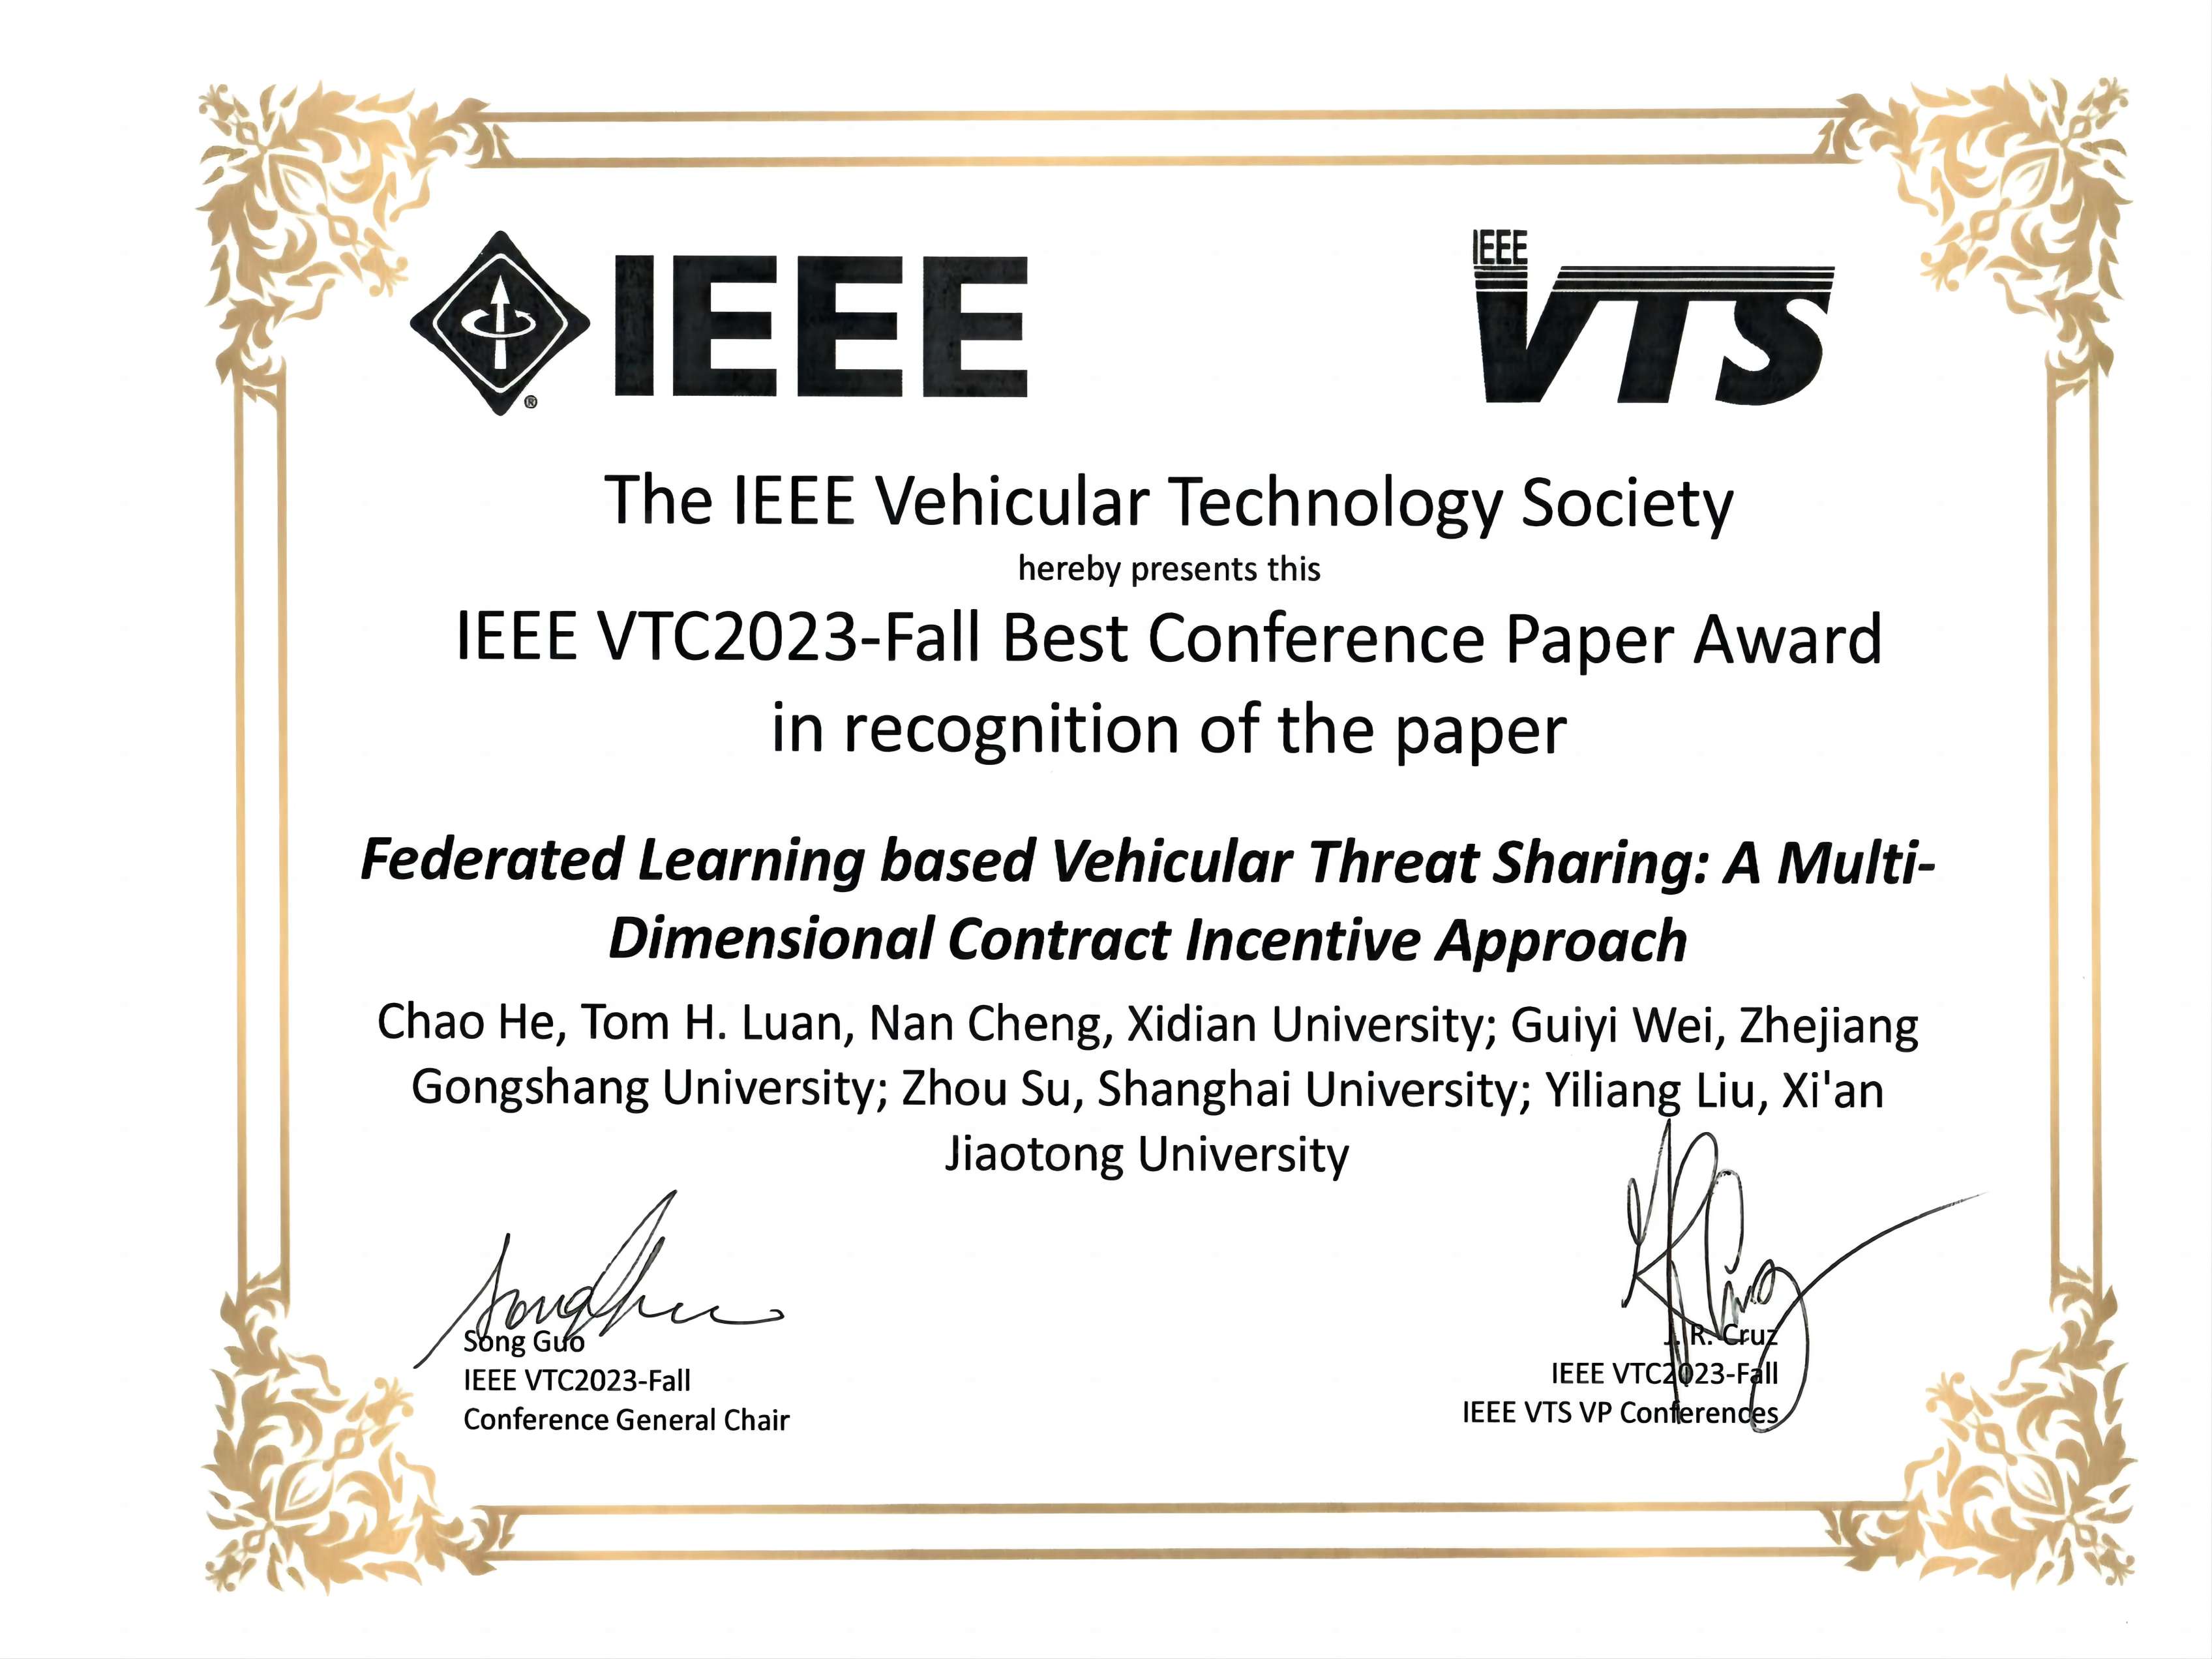 恭喜承楠老师论文荣获IEEE VTC2023-Fall 最佳会议论文奖